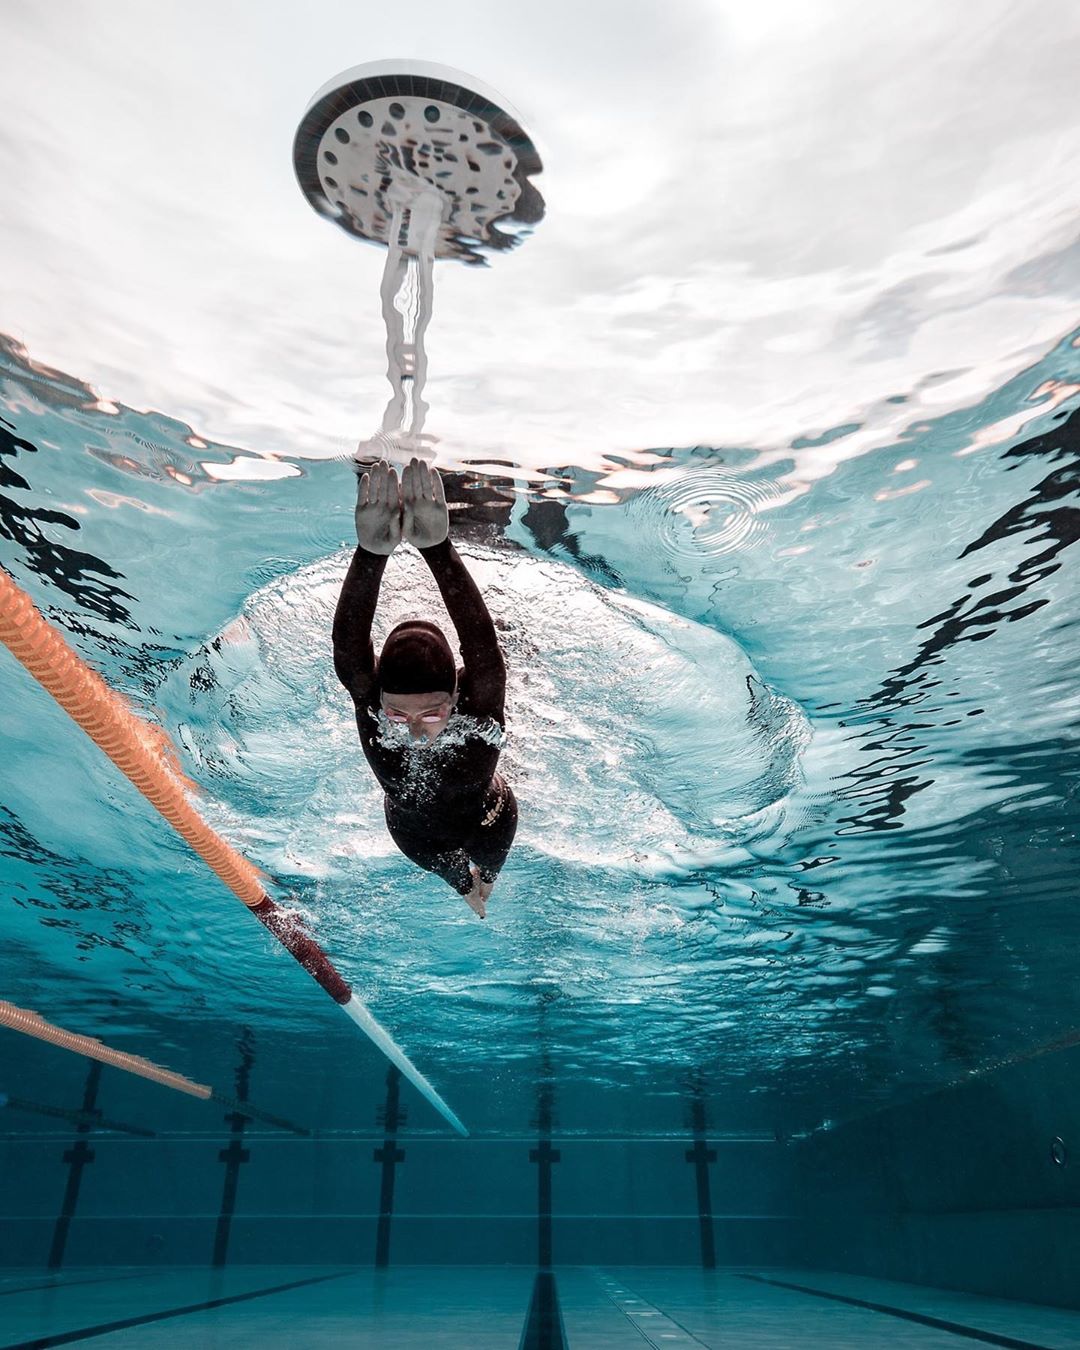 Подводные фотографии с ныряльщиками от Лорана Фарже